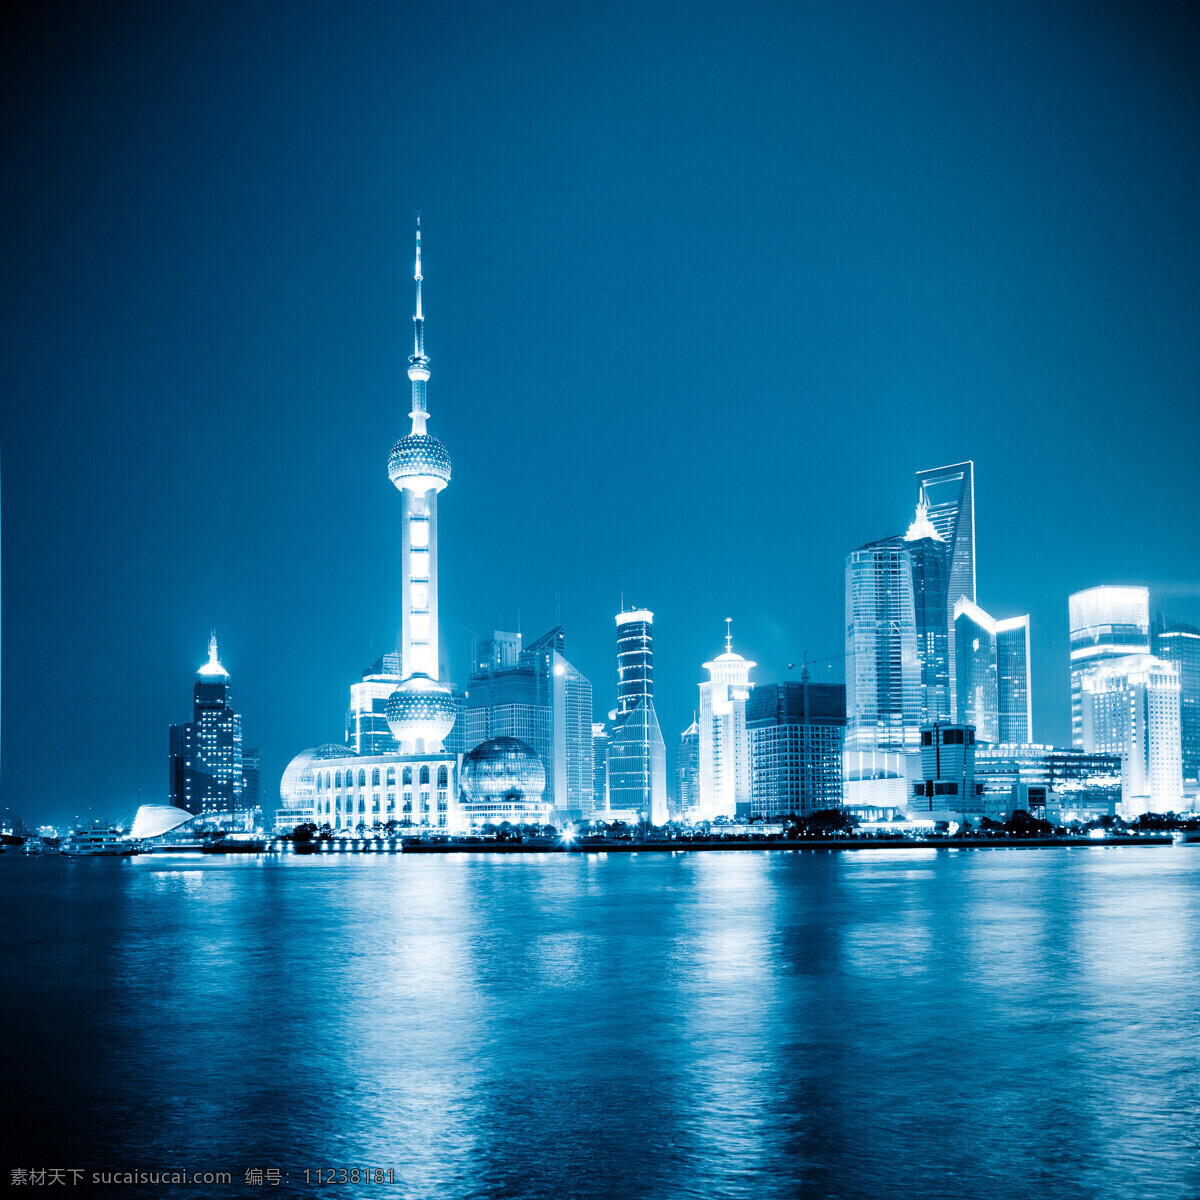 上海 夜景 上海夜景 东方明珠 陆家嘴 城市夜景 美丽城市风光 繁华都市 高楼大厦 摩天大楼 美丽风景 城市景色 城市美景 城市风光 环境家居